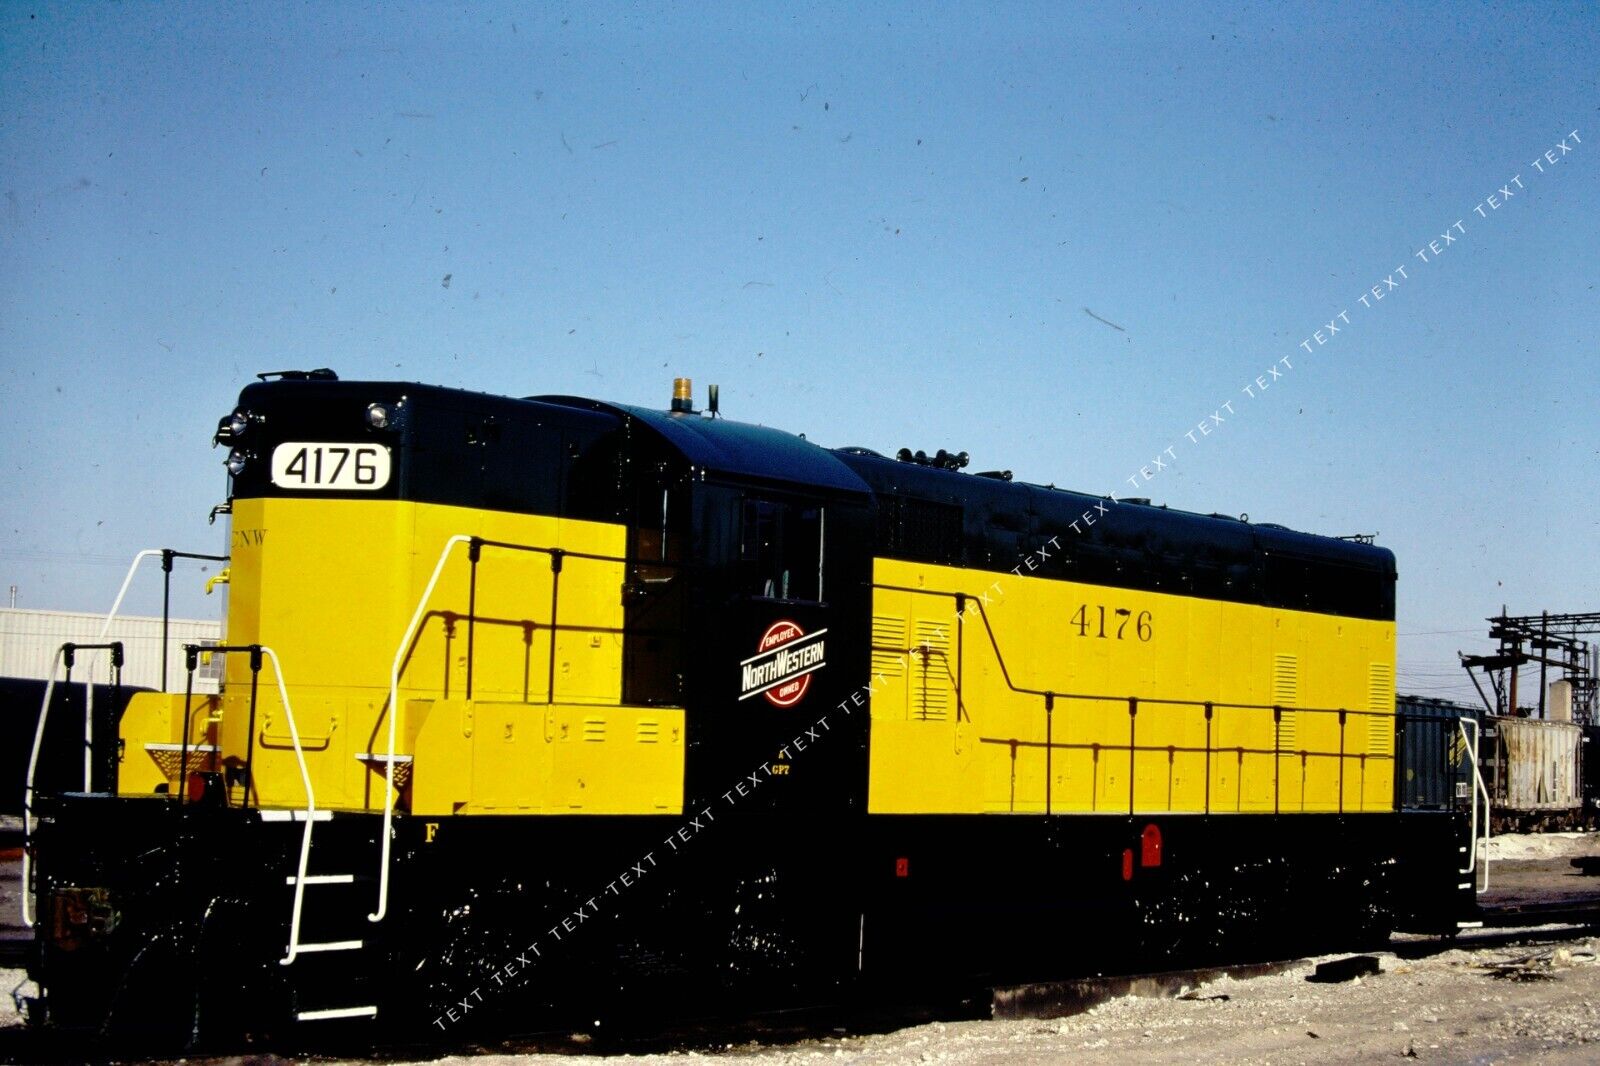 ORG SLIDE CNW 4176 GP7 @ Melrose pk in Mar'81 ⭐ Fresh paint - ROSTER